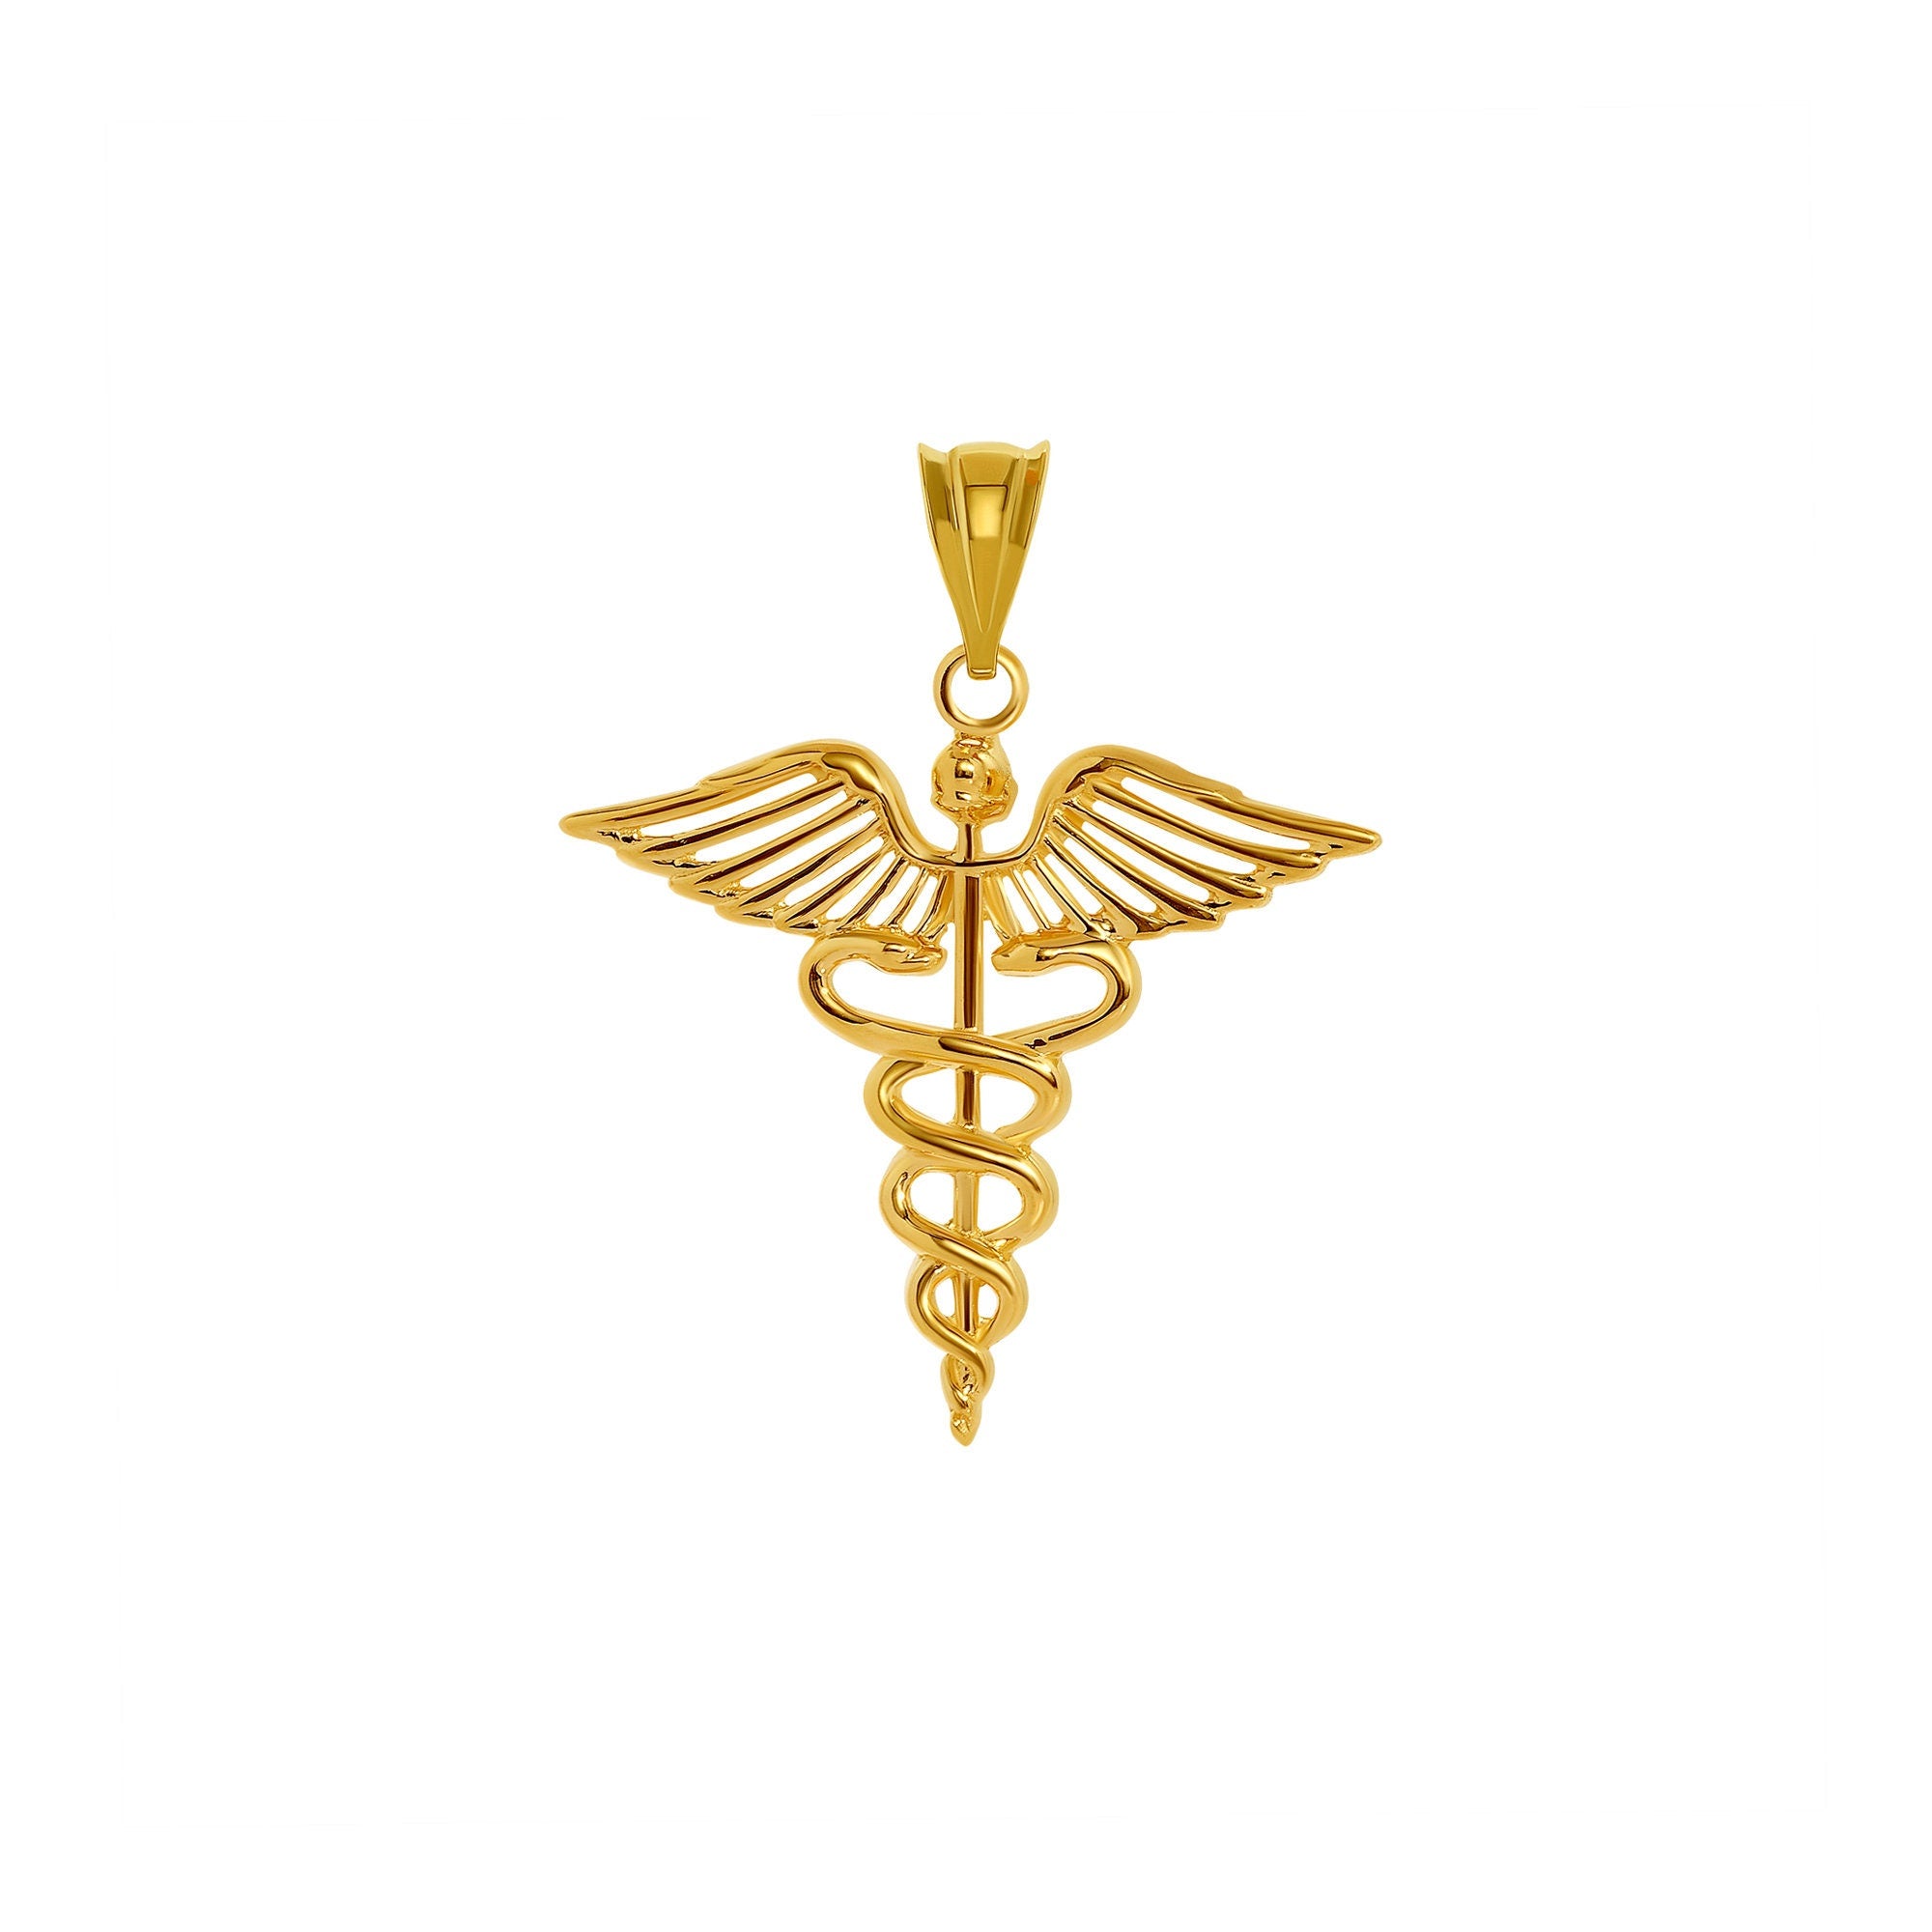 14k solid gold medical pendant